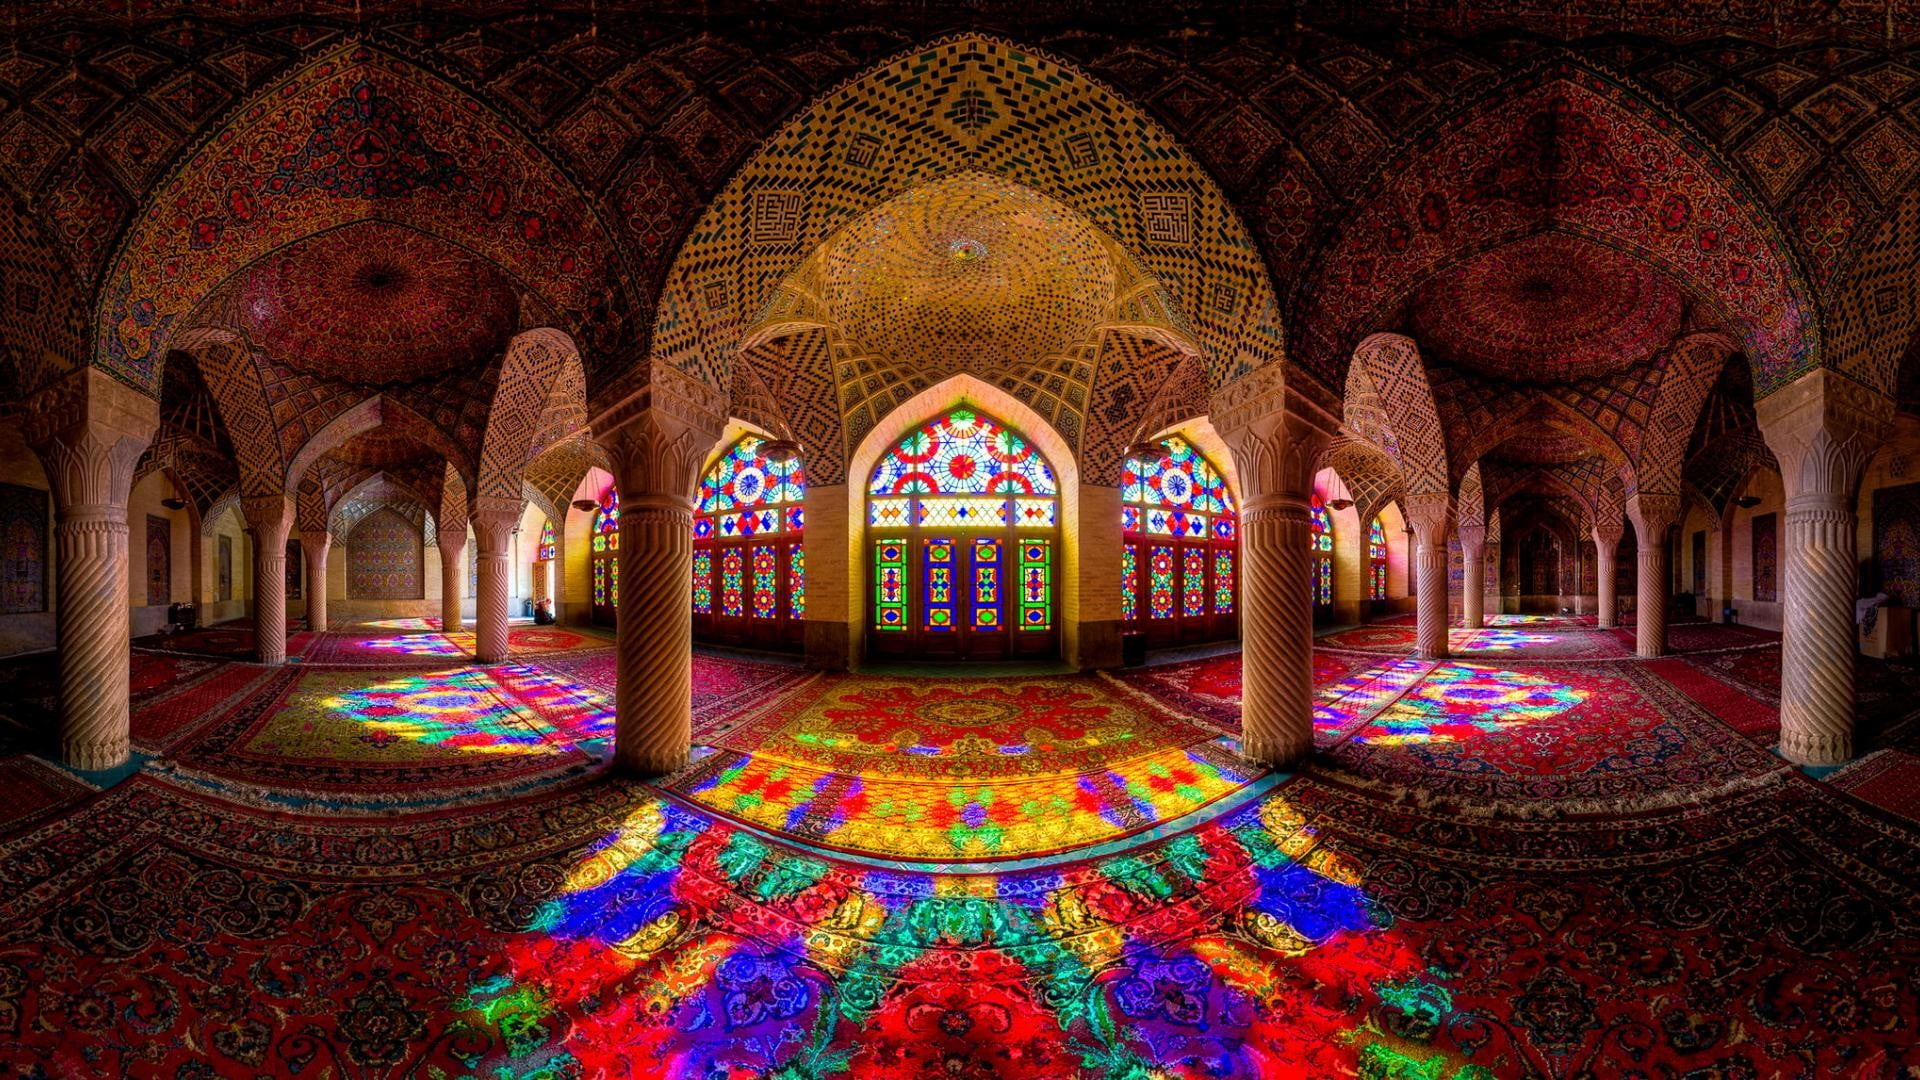 mosque, architecture, Islamic architecture, Iran